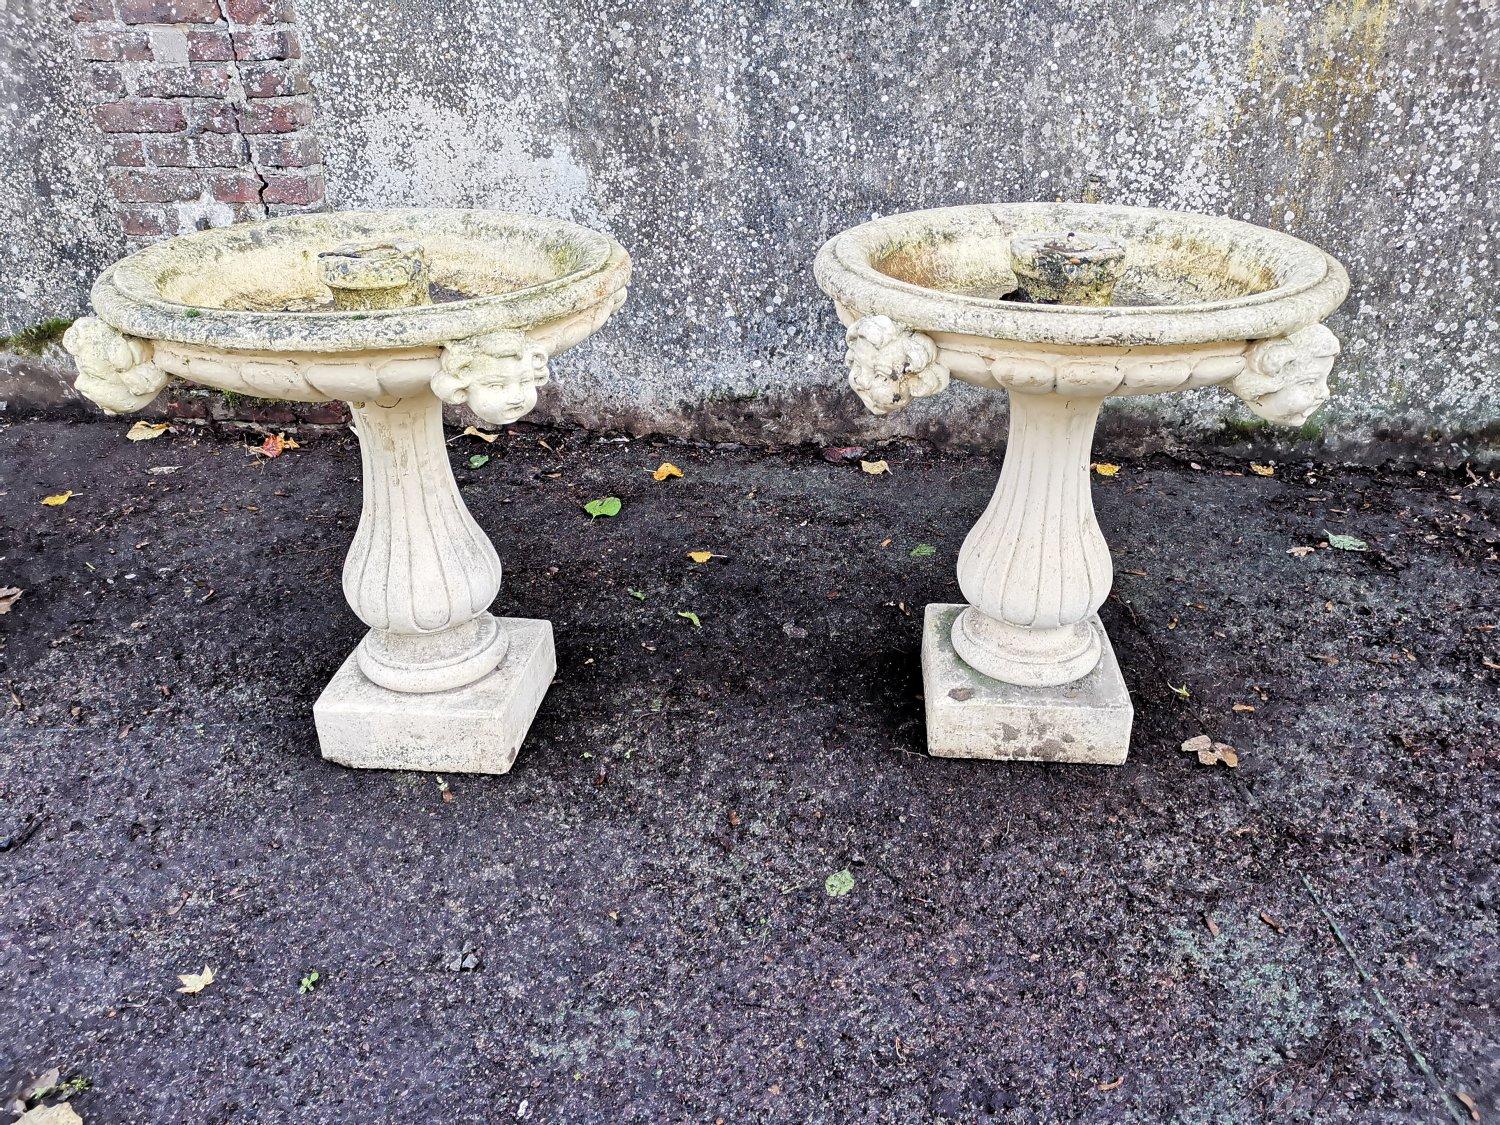 Ein wundervolles Paar französischer Gartenbrunnen aus Gussbeton aus der Mitte des Jahrhunderts mit mittelalterlichen Köpfen an den Becken.
Diese können mit dekorativen Brunnenfiguren in der Mitte versehen oder so belassen werden, wie sie